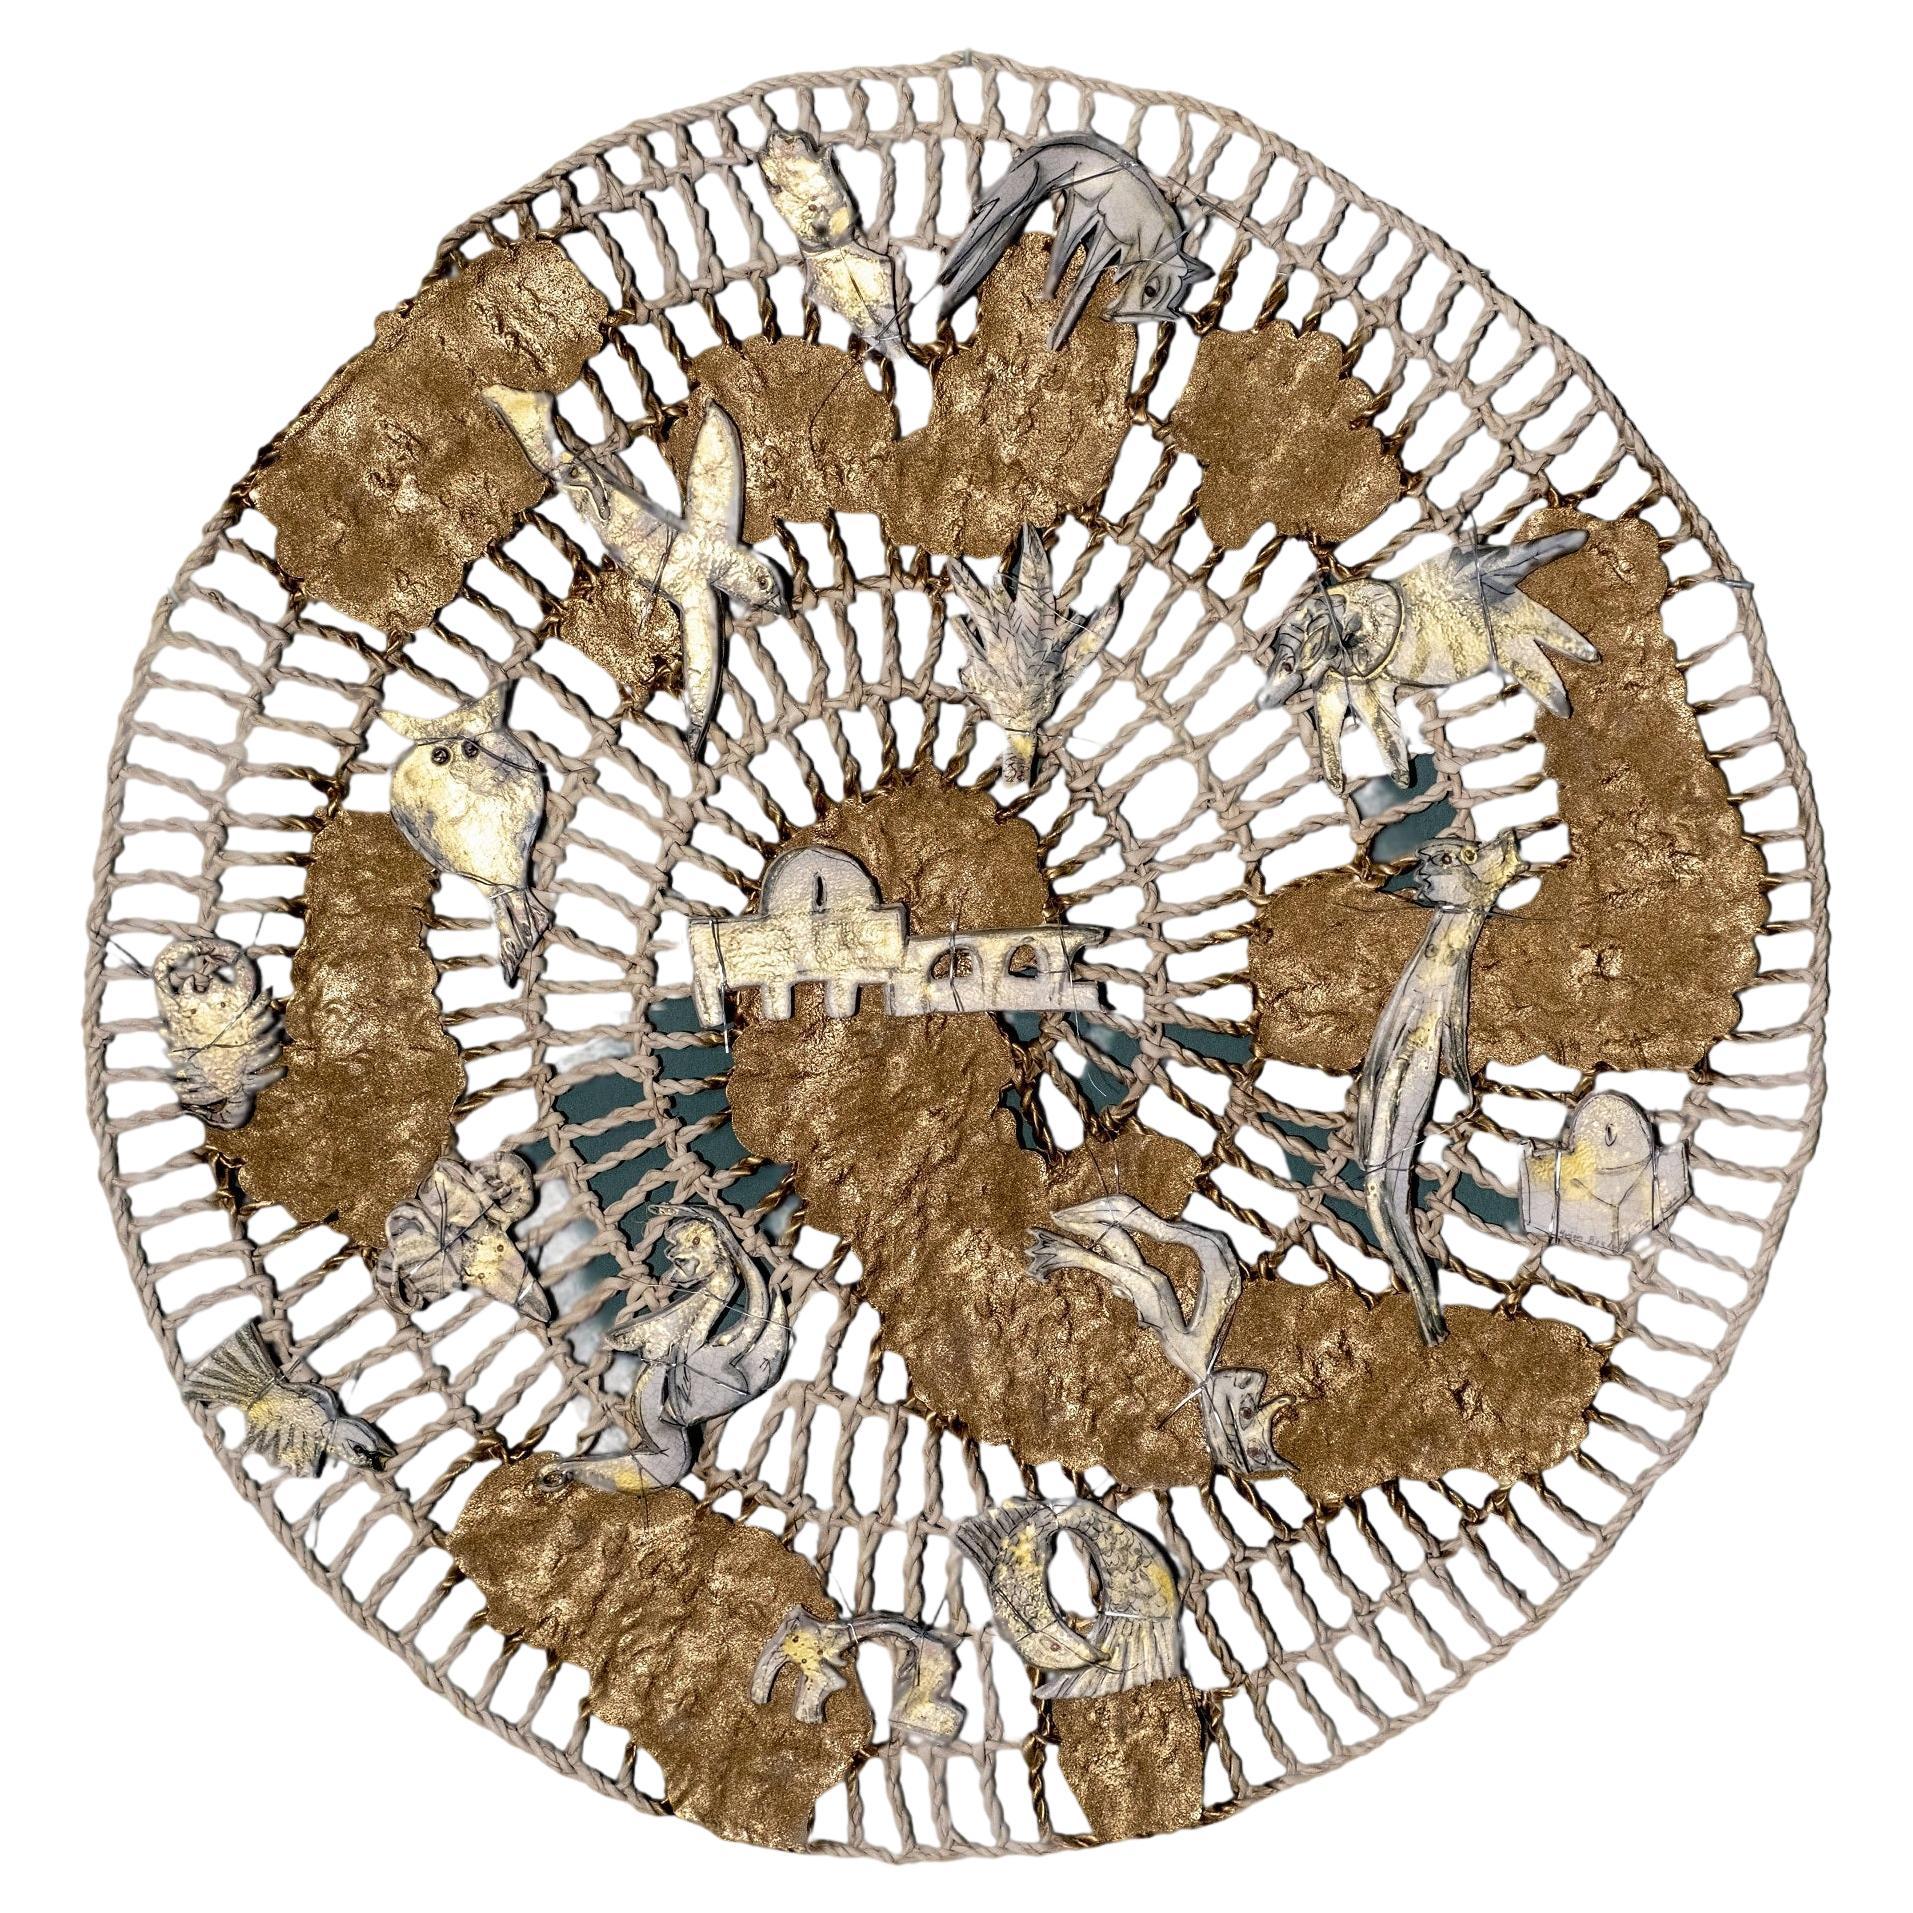 Tapis mural 6'7" : tissage artisanal écologique en fibre naturelle par meriem